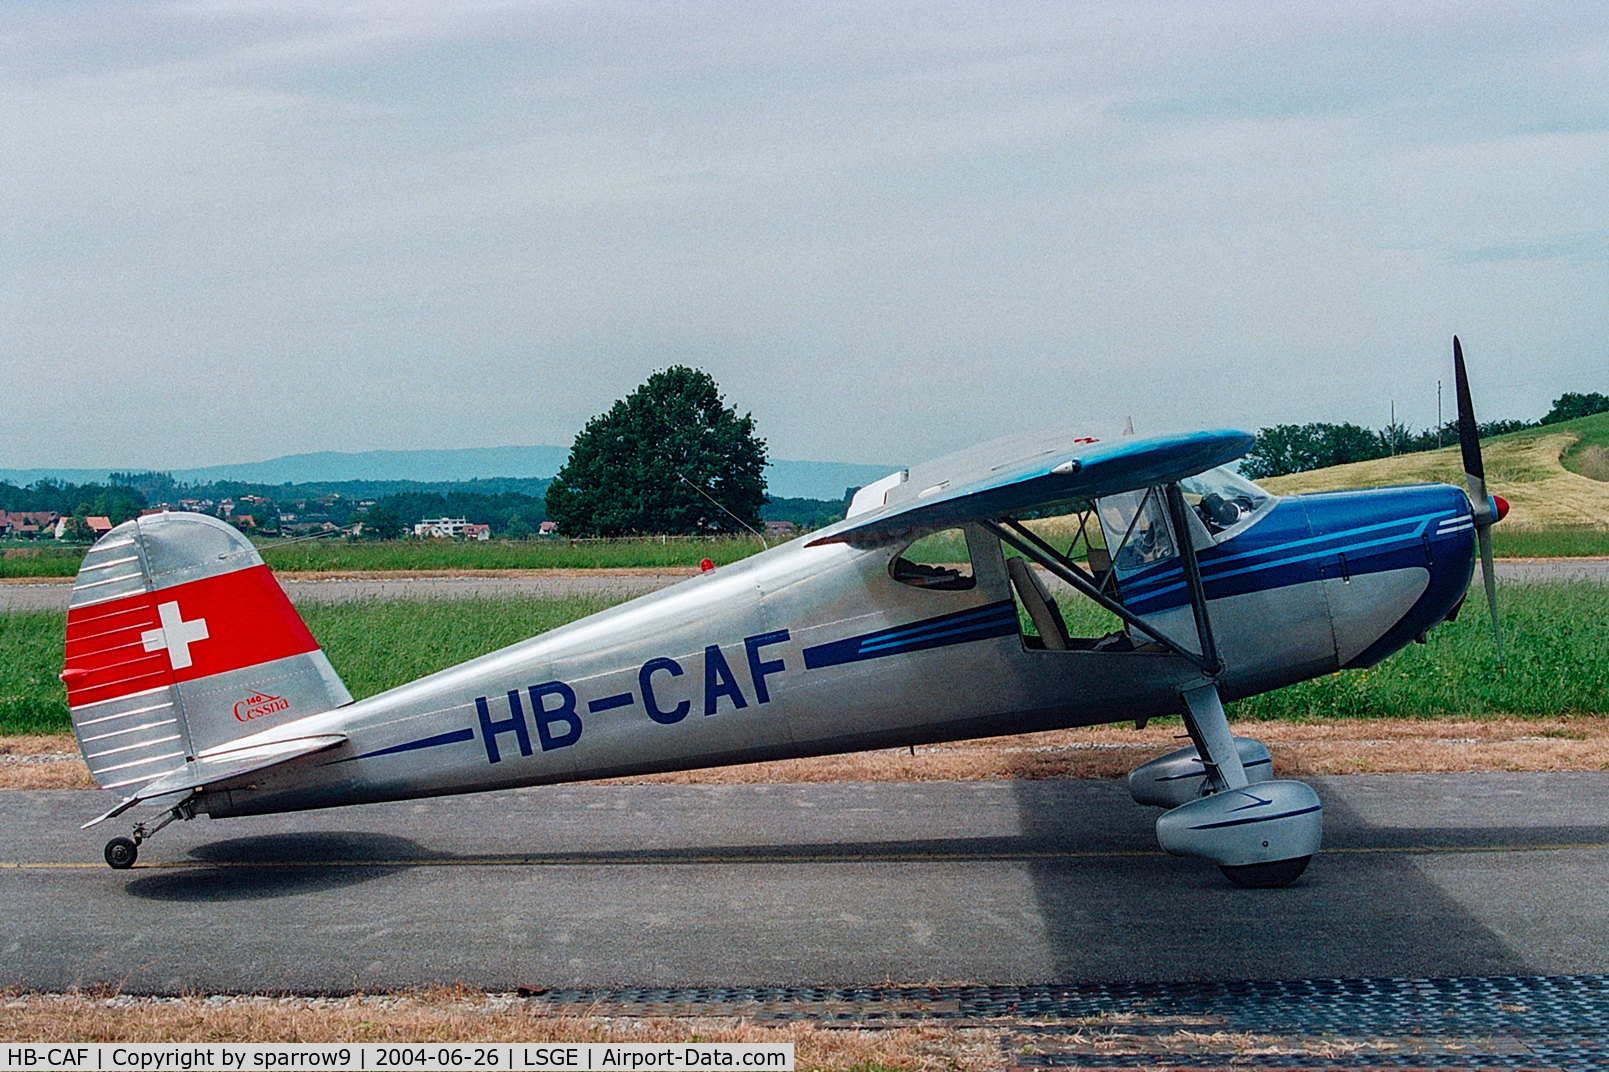 HB-CAF, 1947 Cessna 140 C/N 12839, RIO Ecuvillens. Scanned from a negative.